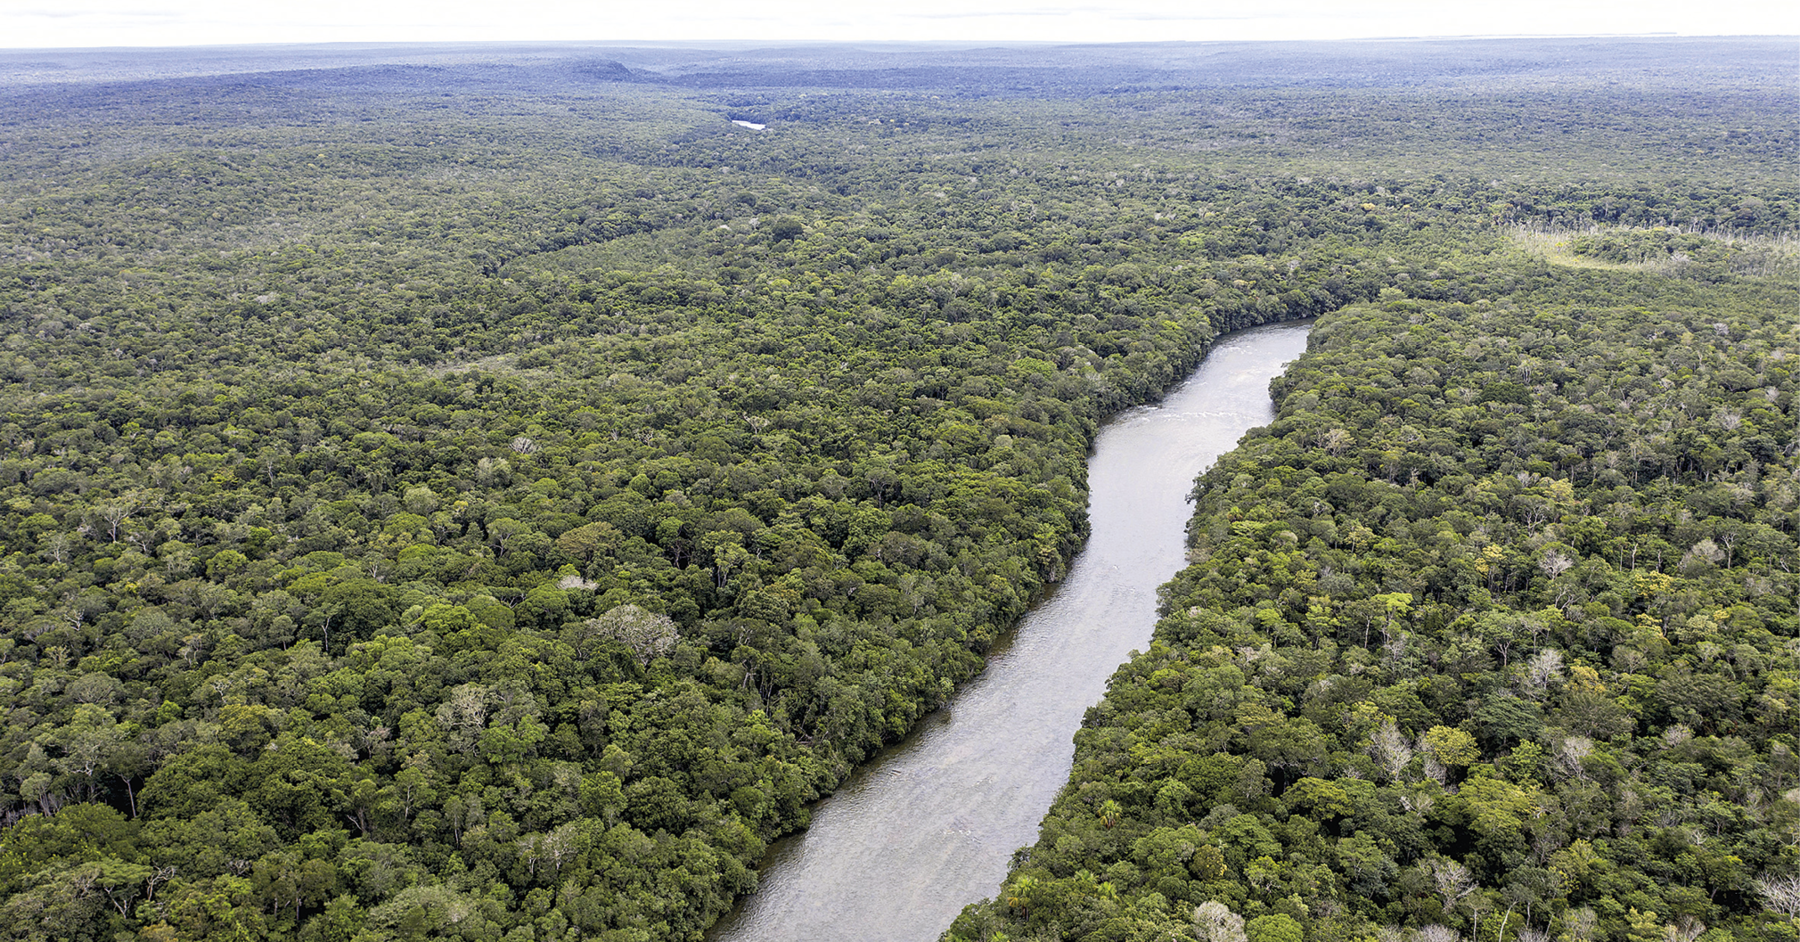 Fotografia. Vista aérea de uma ampla área plana coberta por floresta com árvores de grande estatura e copas cheias de folhas verdes. Na porção central, um rio corta a floresta.